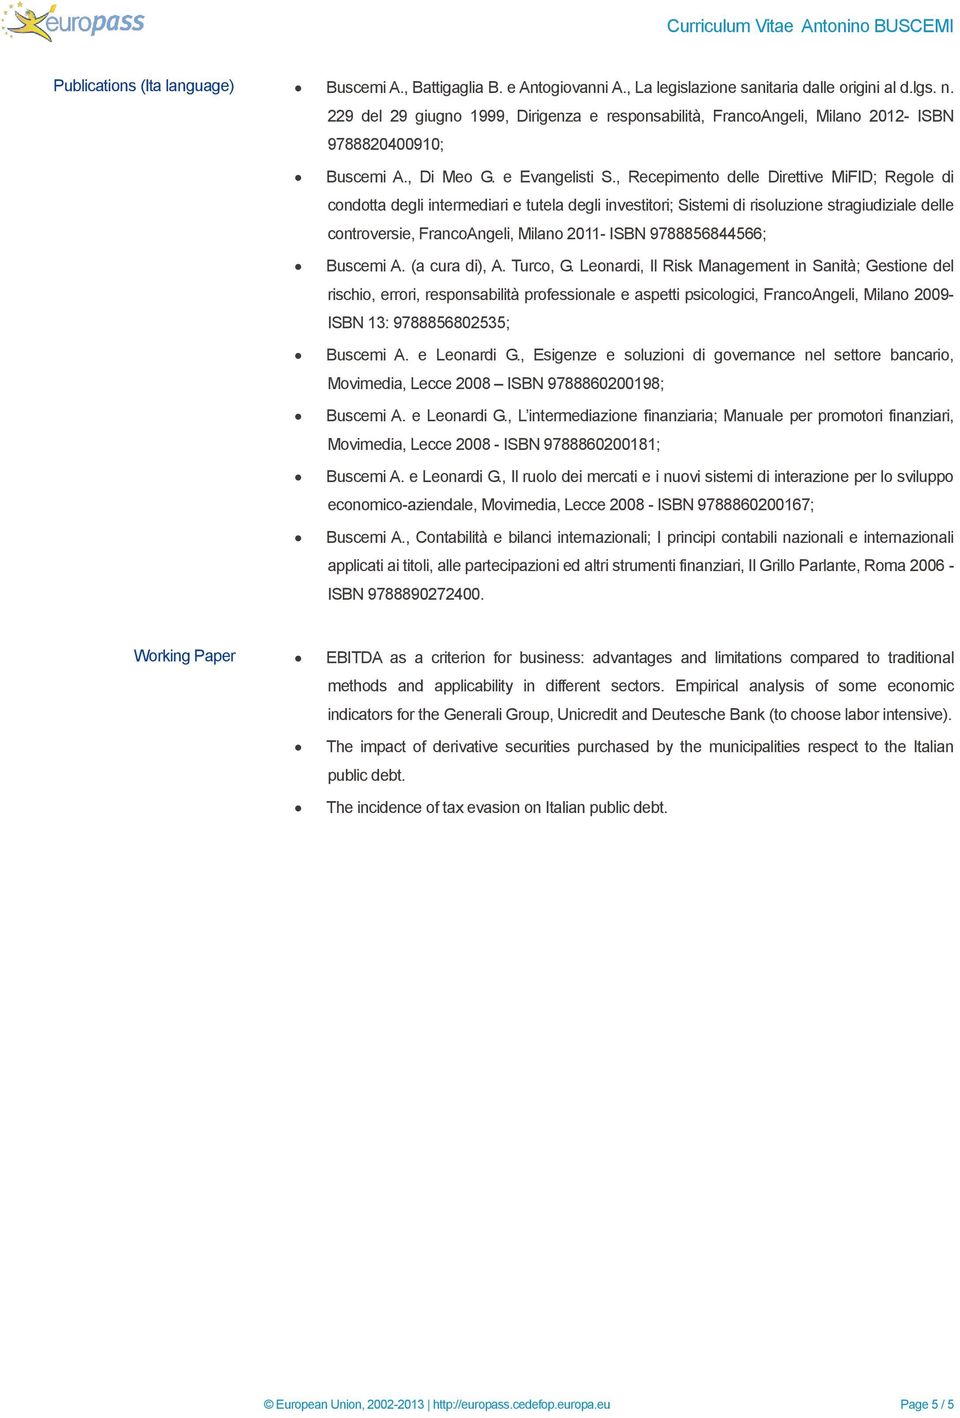 , Recepimento delle Direttive MiFID; Regole di condotta degli intermediari e tutela degli investitori; Sistemi di risoluzione stragiudiziale delle controversie, FrancoAngeli, Milano 2011- ISBN